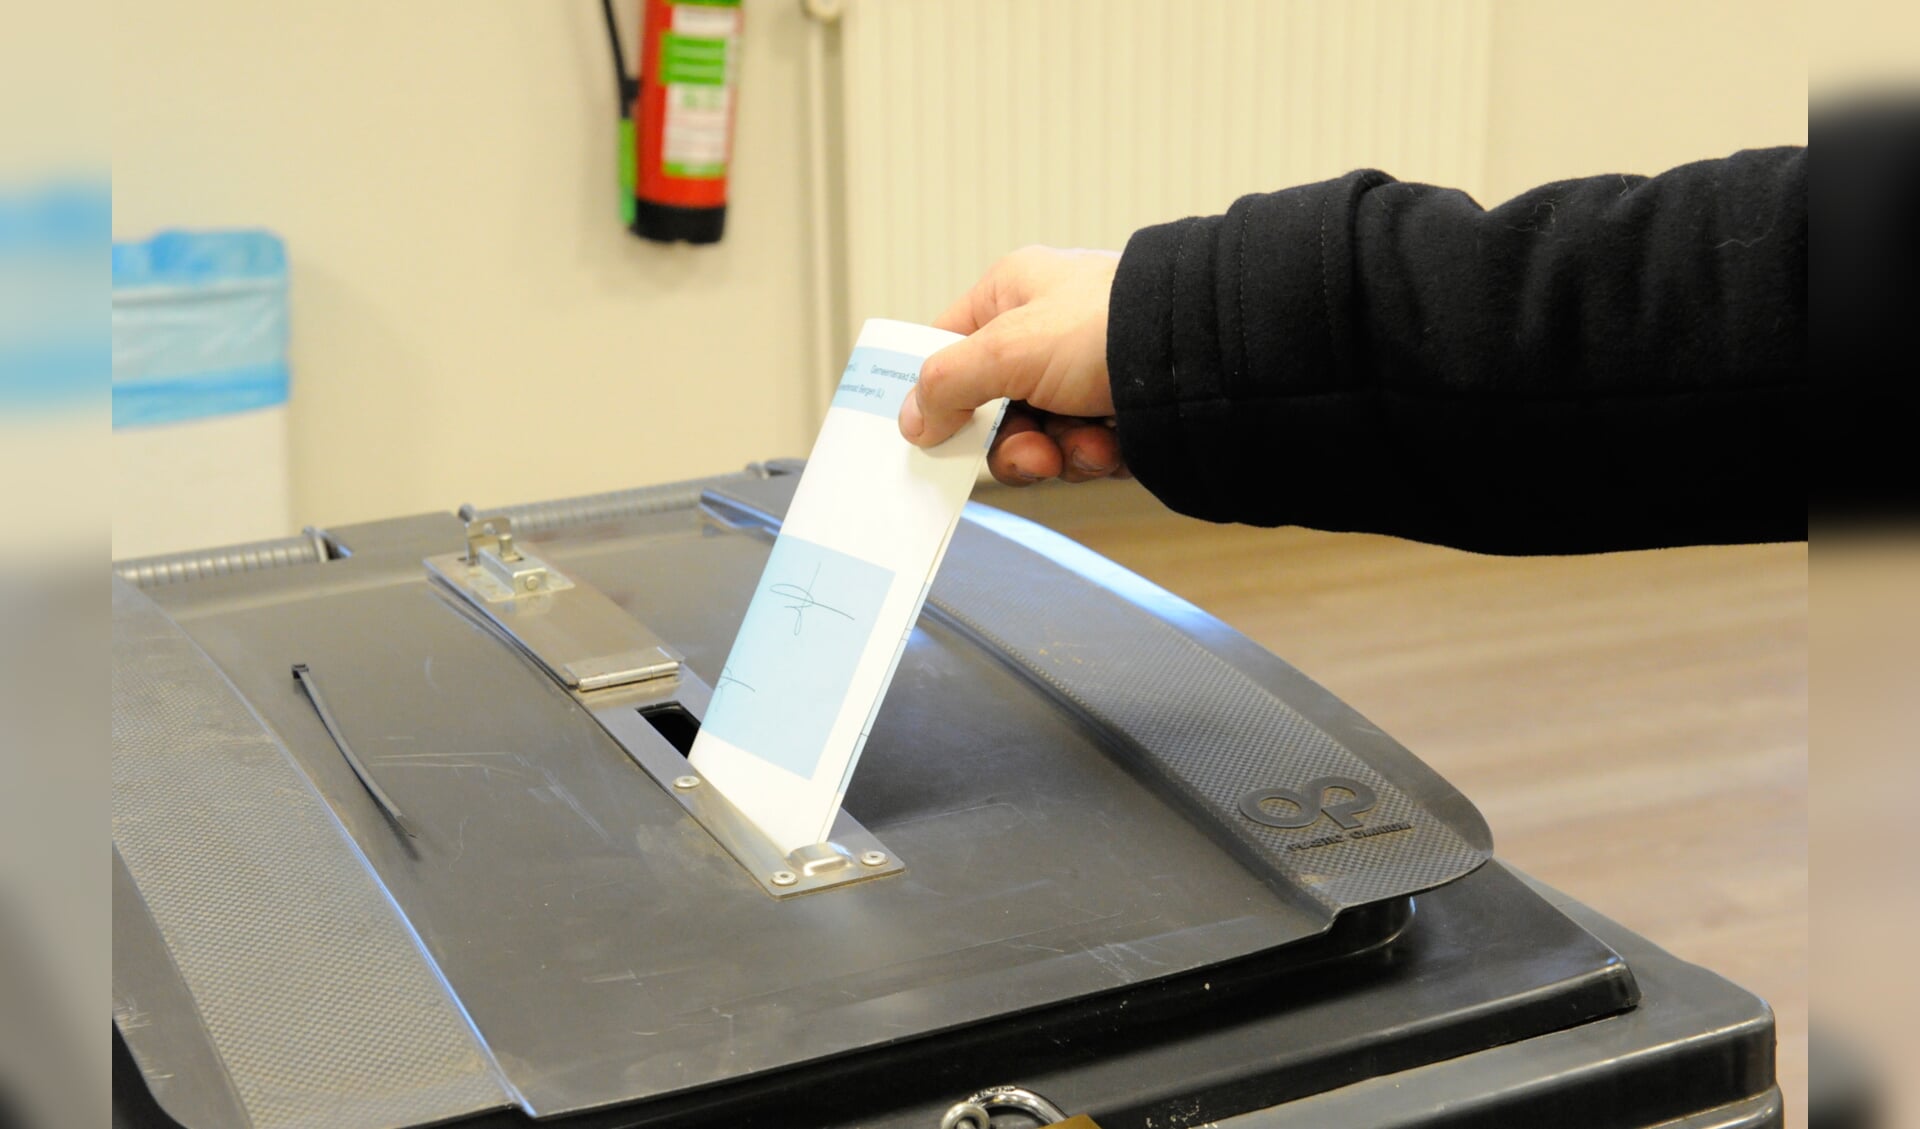 Op 24 november vinden in het Land van Cuijk de herindelingsverkiezingen plaats.